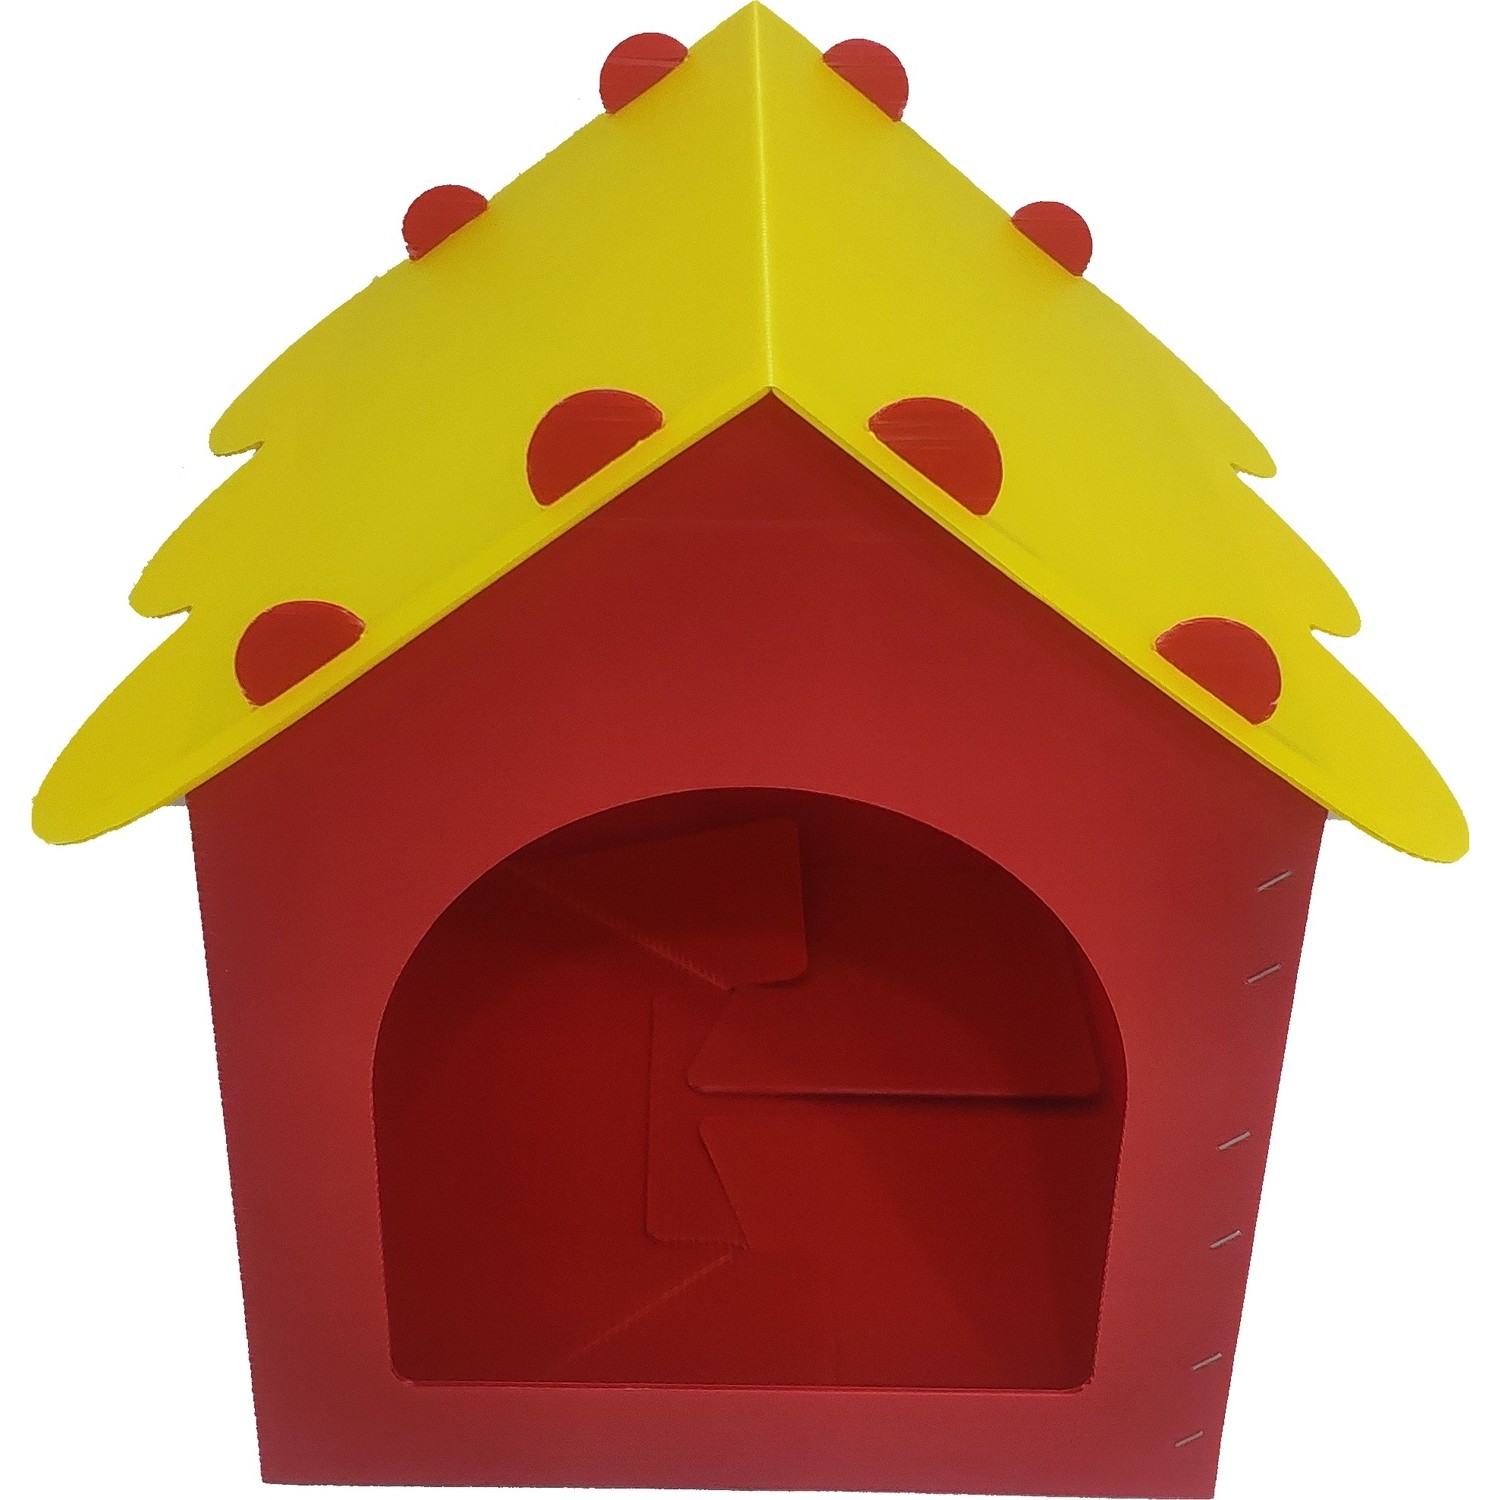 Petist Plastik Pp Kedi Evi Sarı Kırmızı Fiyatı Taksit Seçenekleri